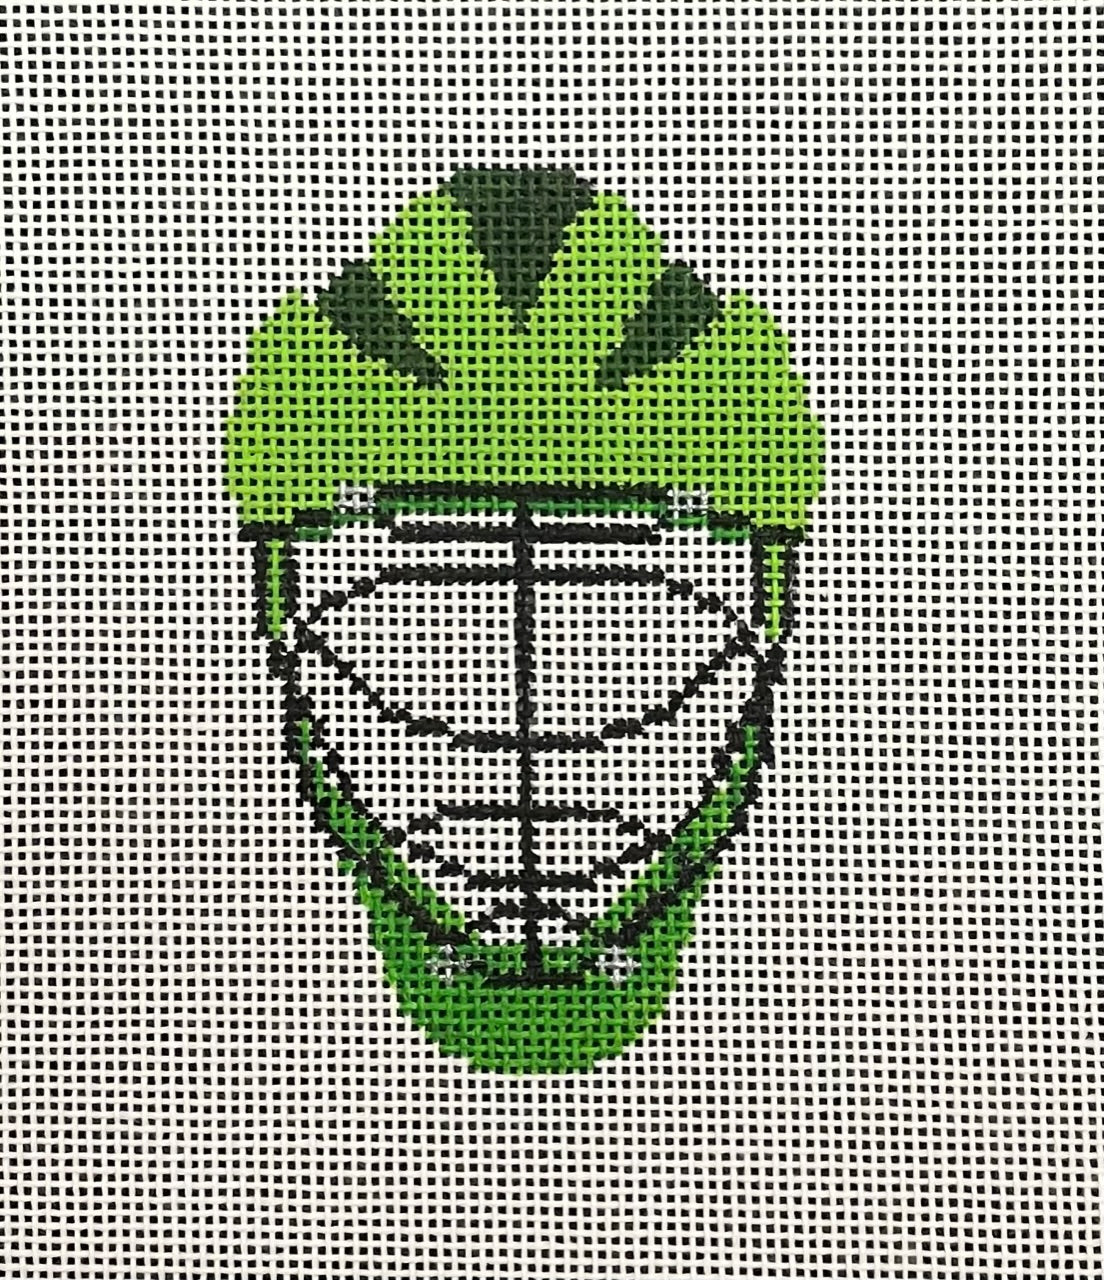 Helmet: Lacrosse